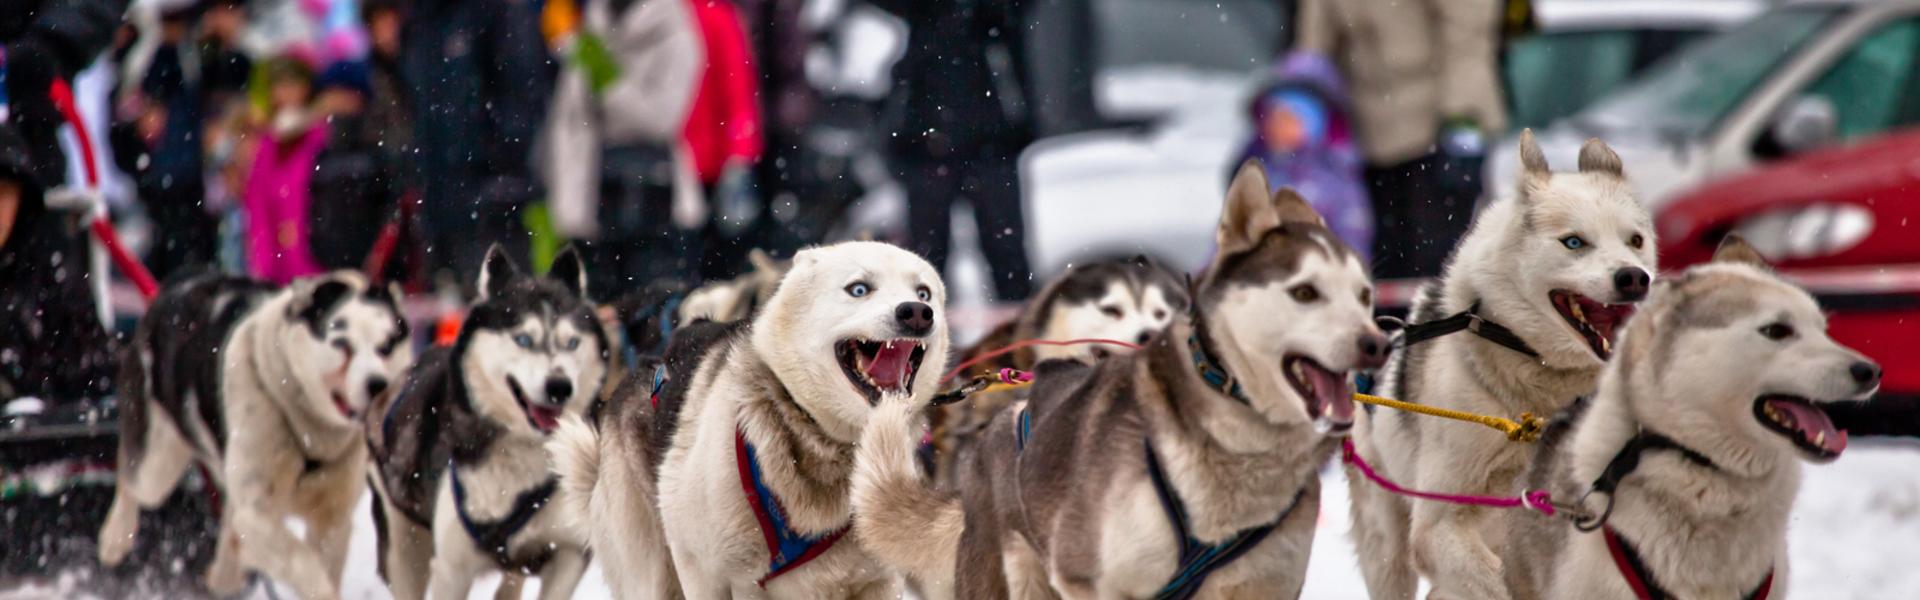 Immagine: Małopolska zimą. Psie zaprzęgi – rekreacja dla miłośników ruchu i zwierząt